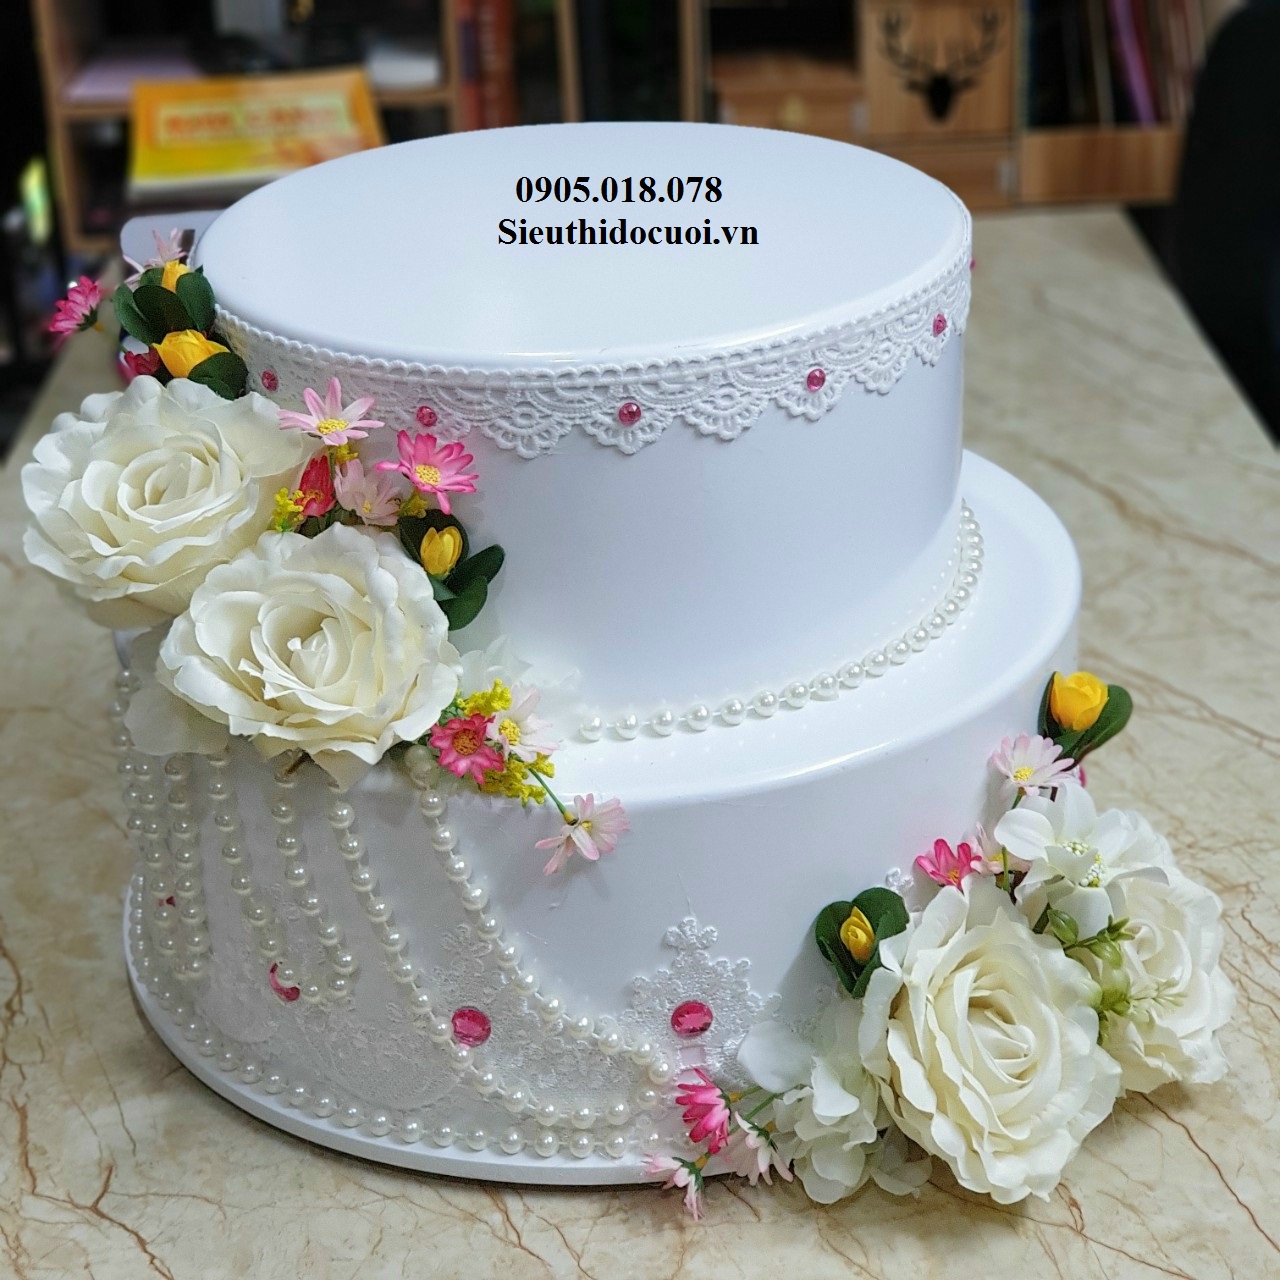 Bánh cưới 2 tầng gắn hoa tươi  Tiệm bánh Vani